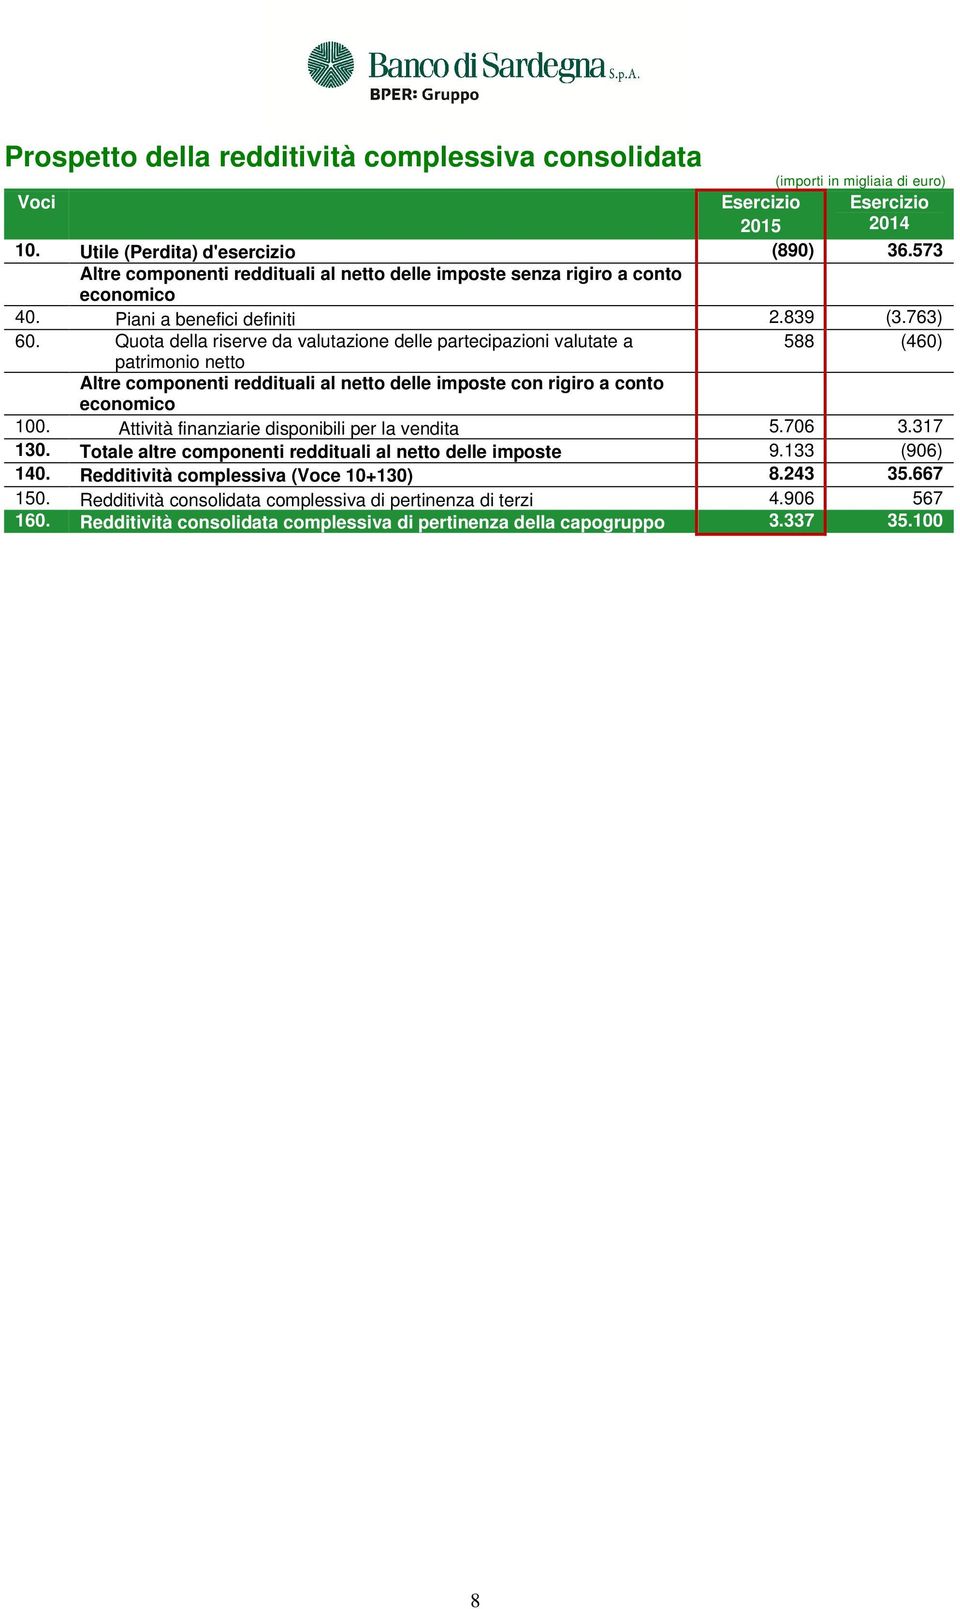 Quota della riserve da valutazione delle partecipazioni valutate a 588 (460) patrimonio netto Altre componenti reddituali al netto delle imposte con rigiro a conto economico 100.